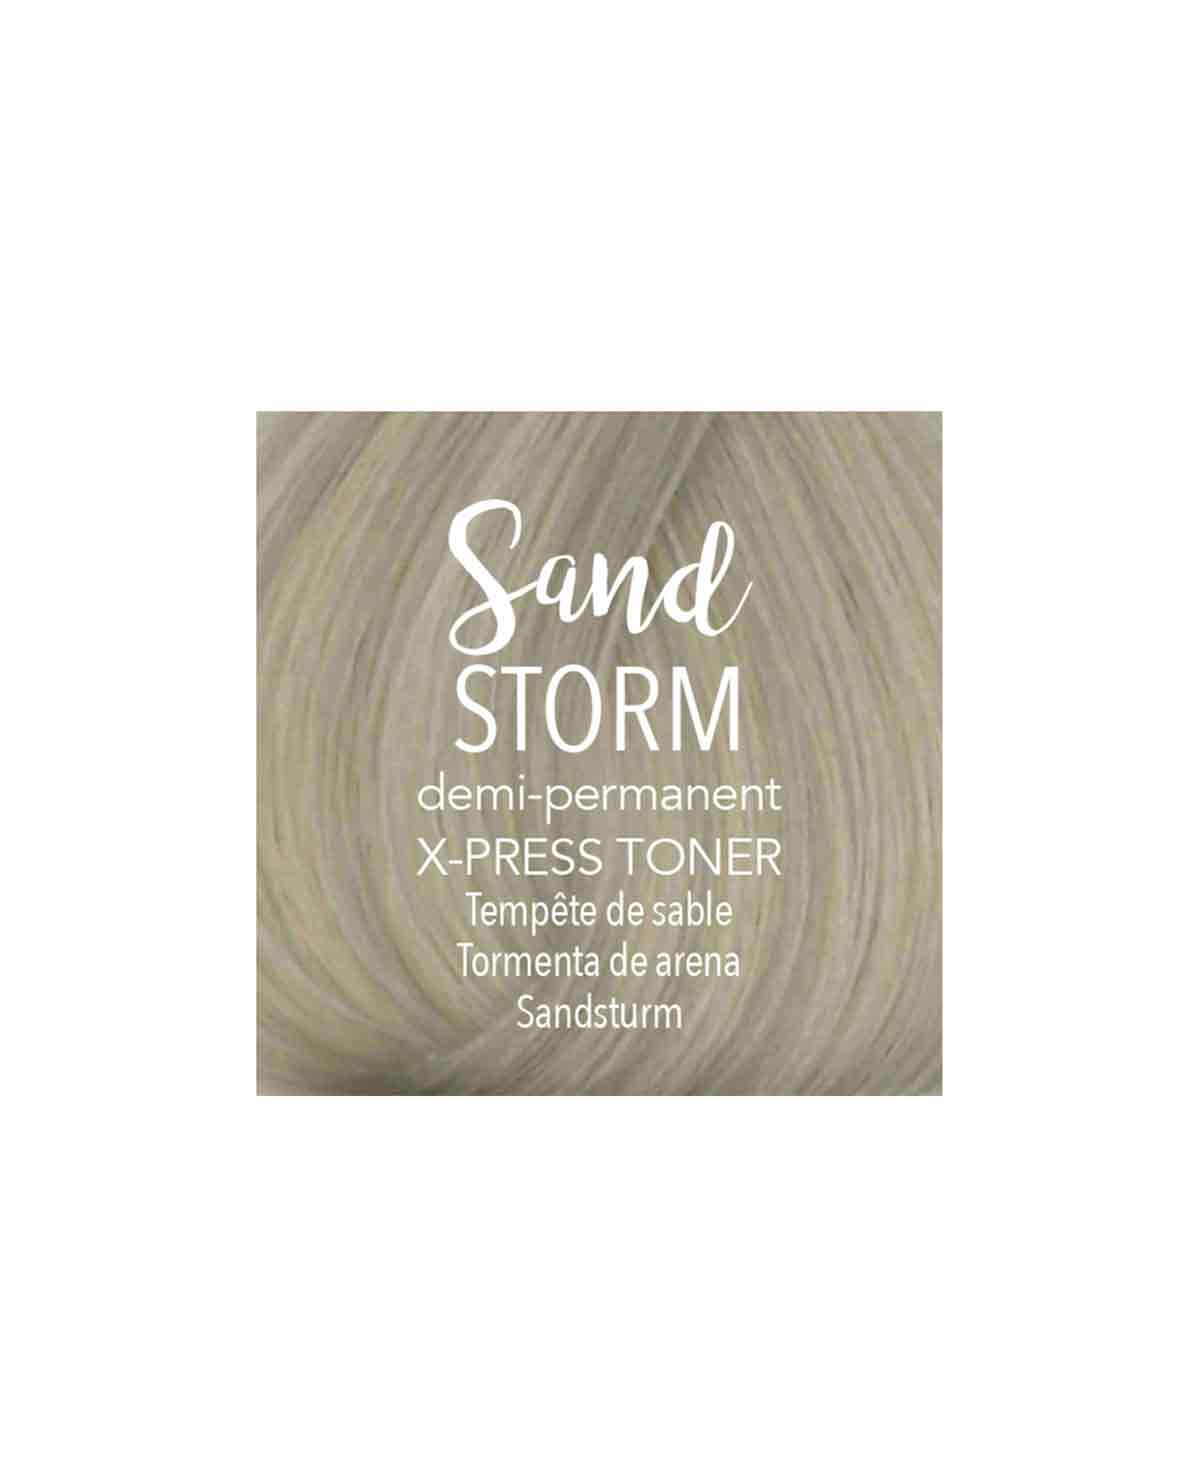 Mydentity X-Press Toner Sand Storm 58g